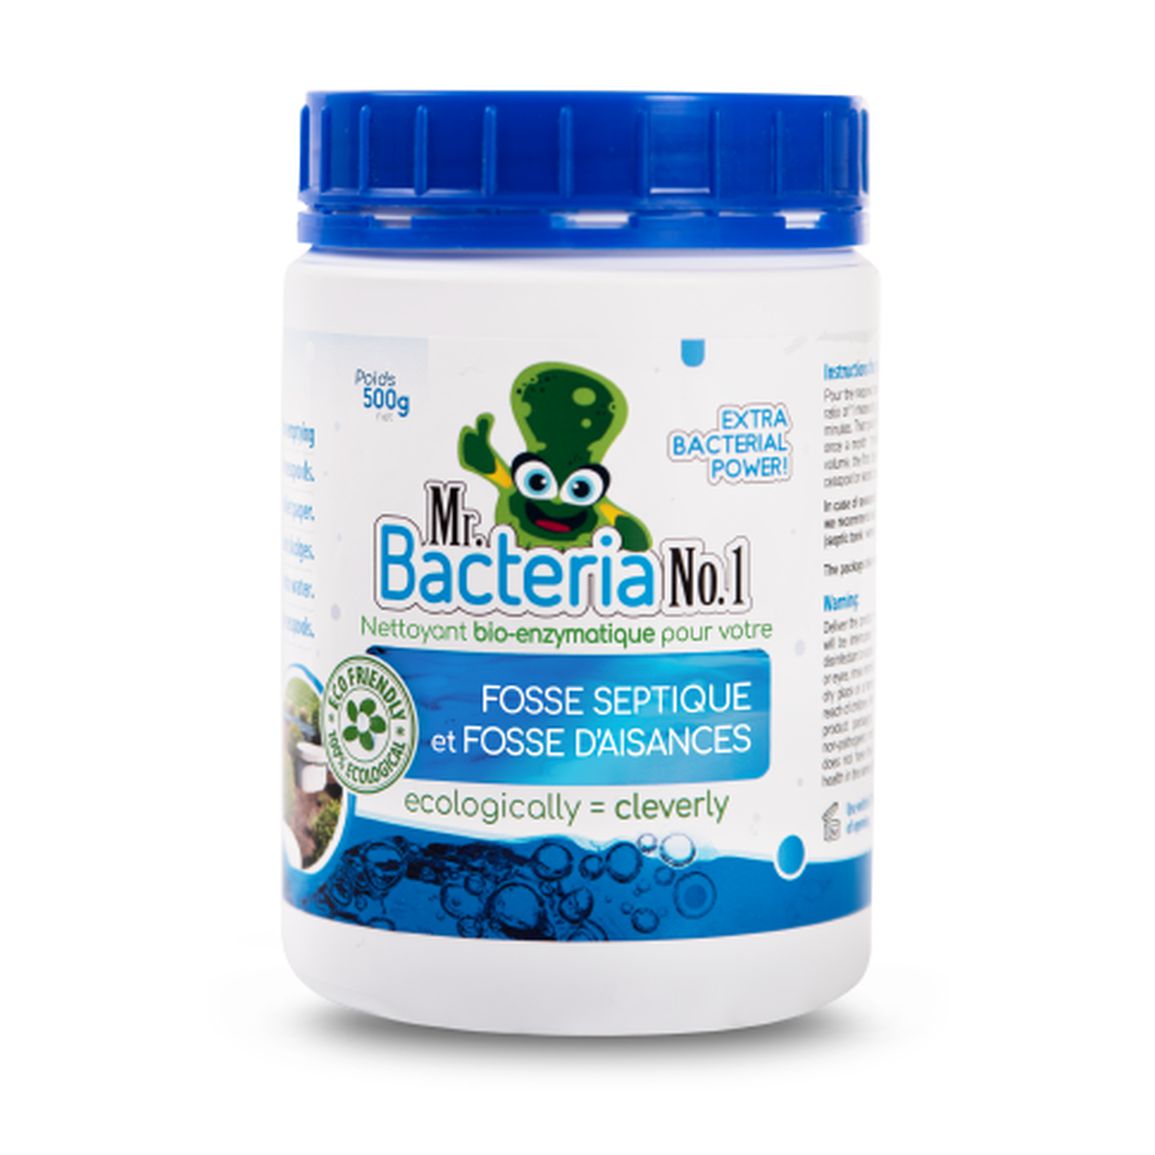 Nettoyant bio-enzymatique pour votre FOSSE SEPTIQUE et FOSSE D’AISANCES 500g (Activateur fosse septique)